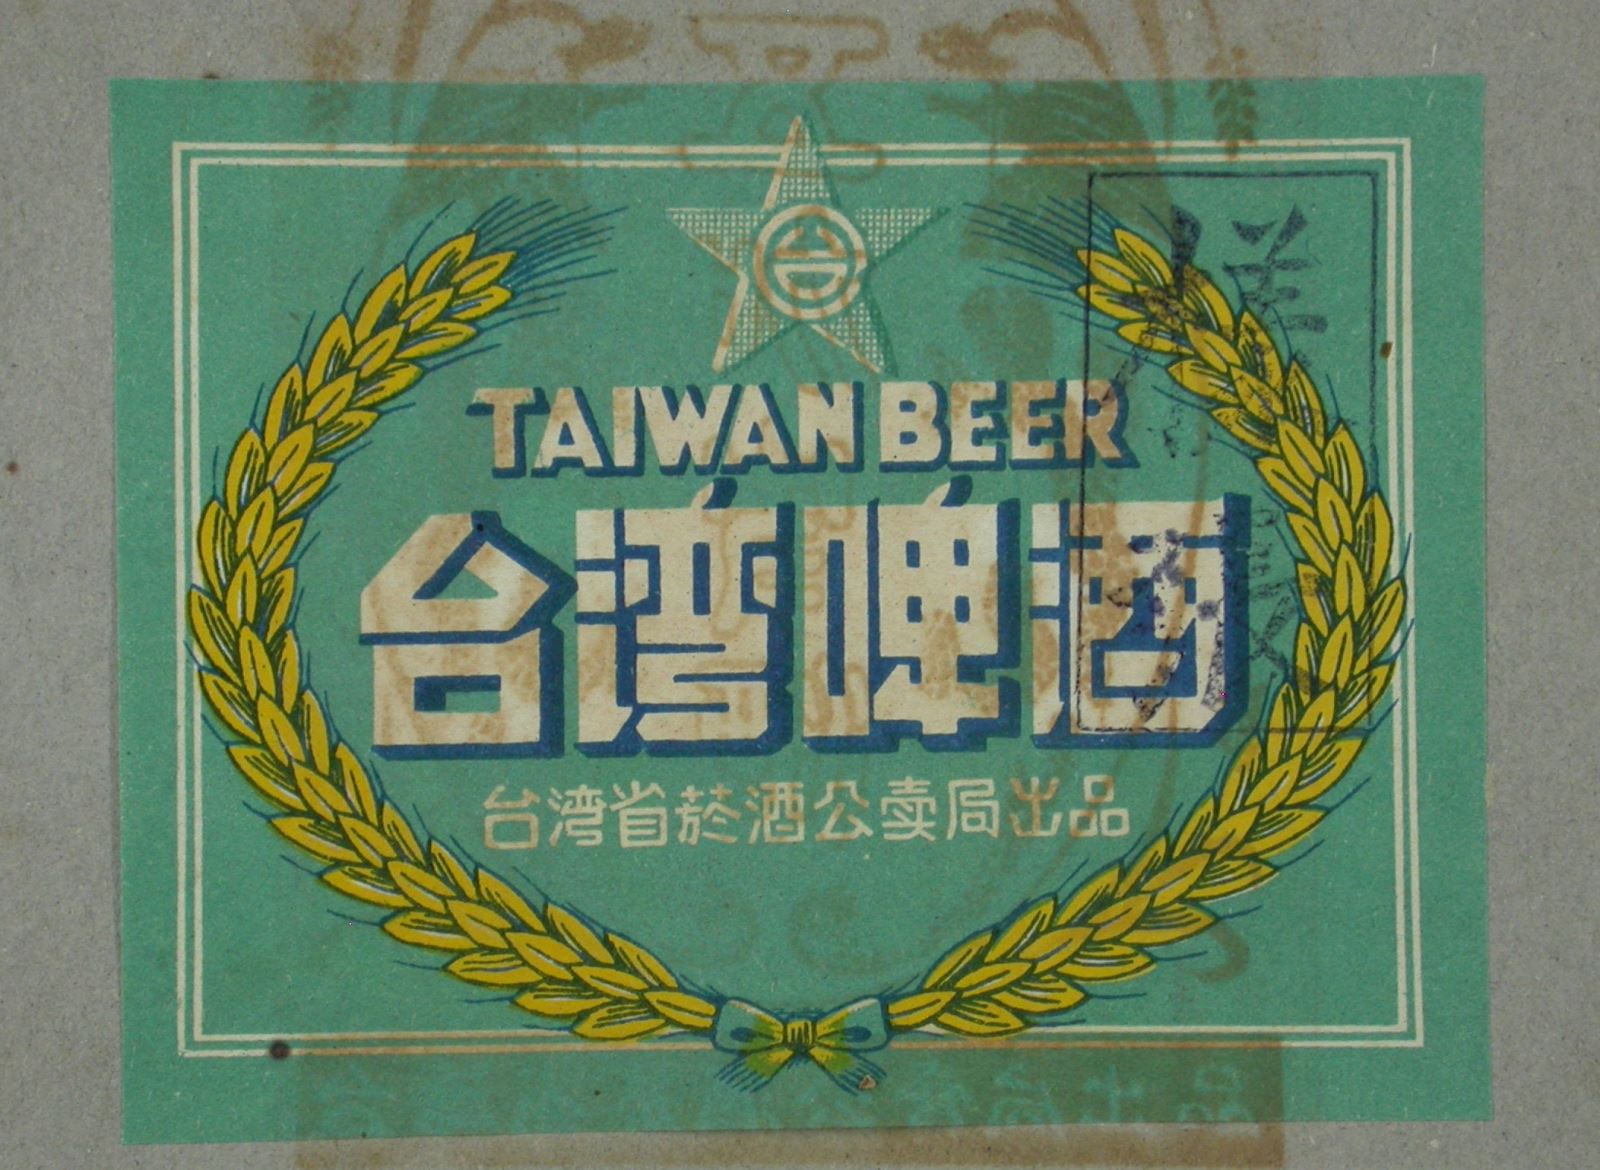 臺灣啤酒標貼樣張